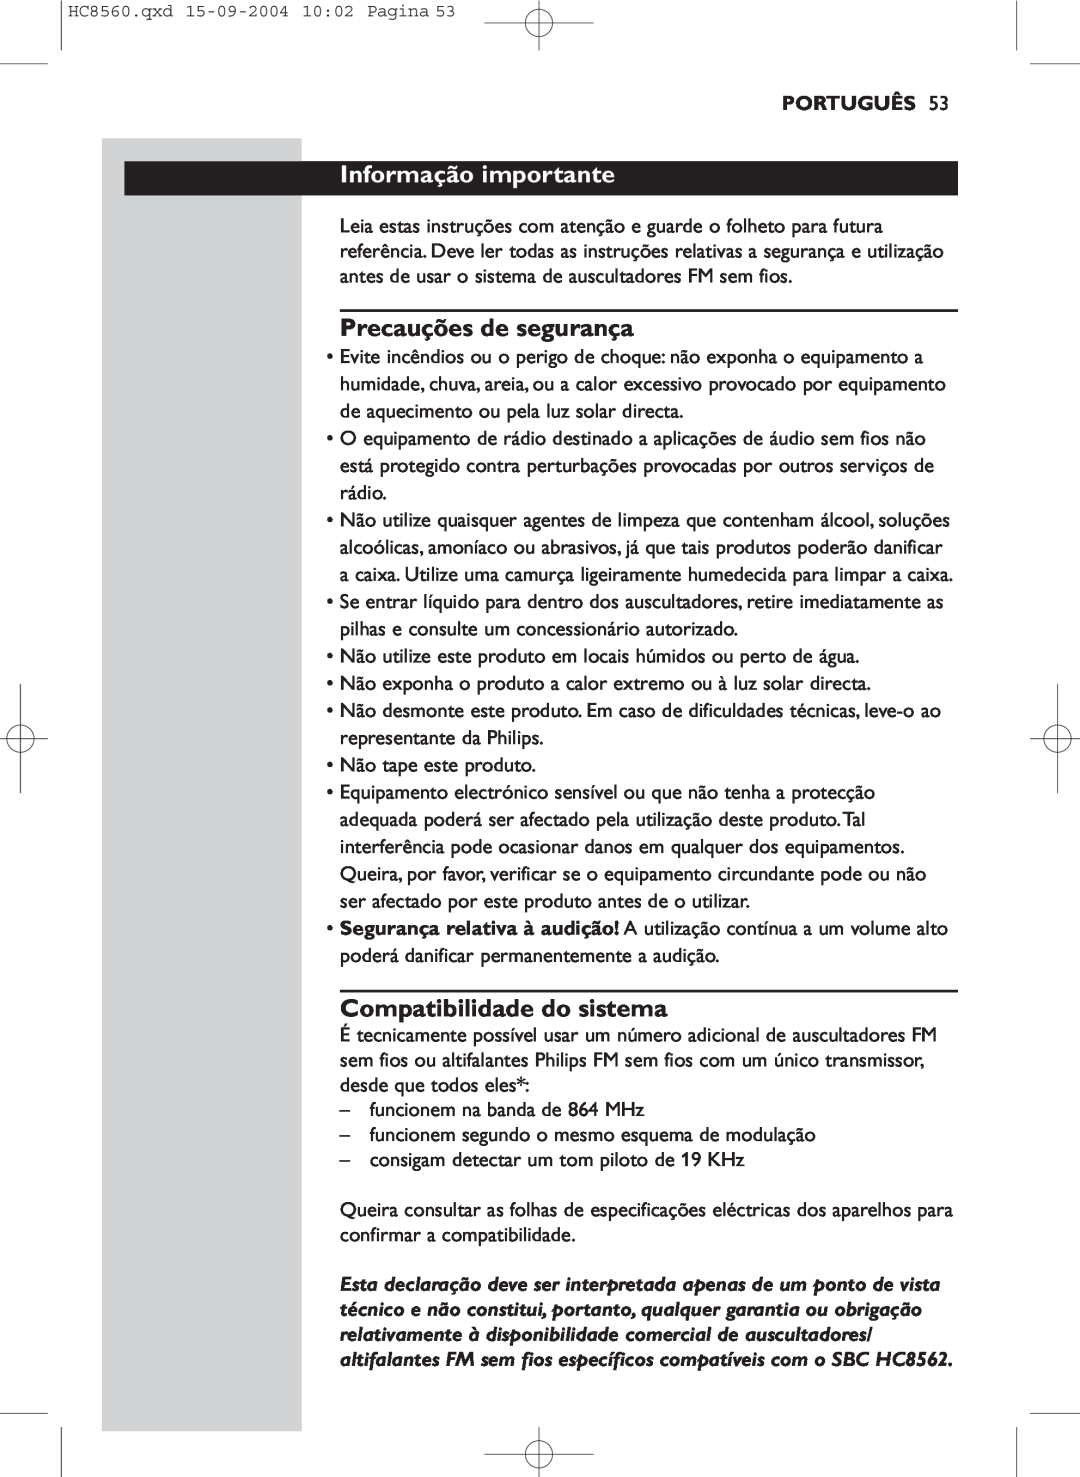 Philips HC 8560 manual Informação importante, Precauções de segurança, Compatibilidade do sistema, Português 